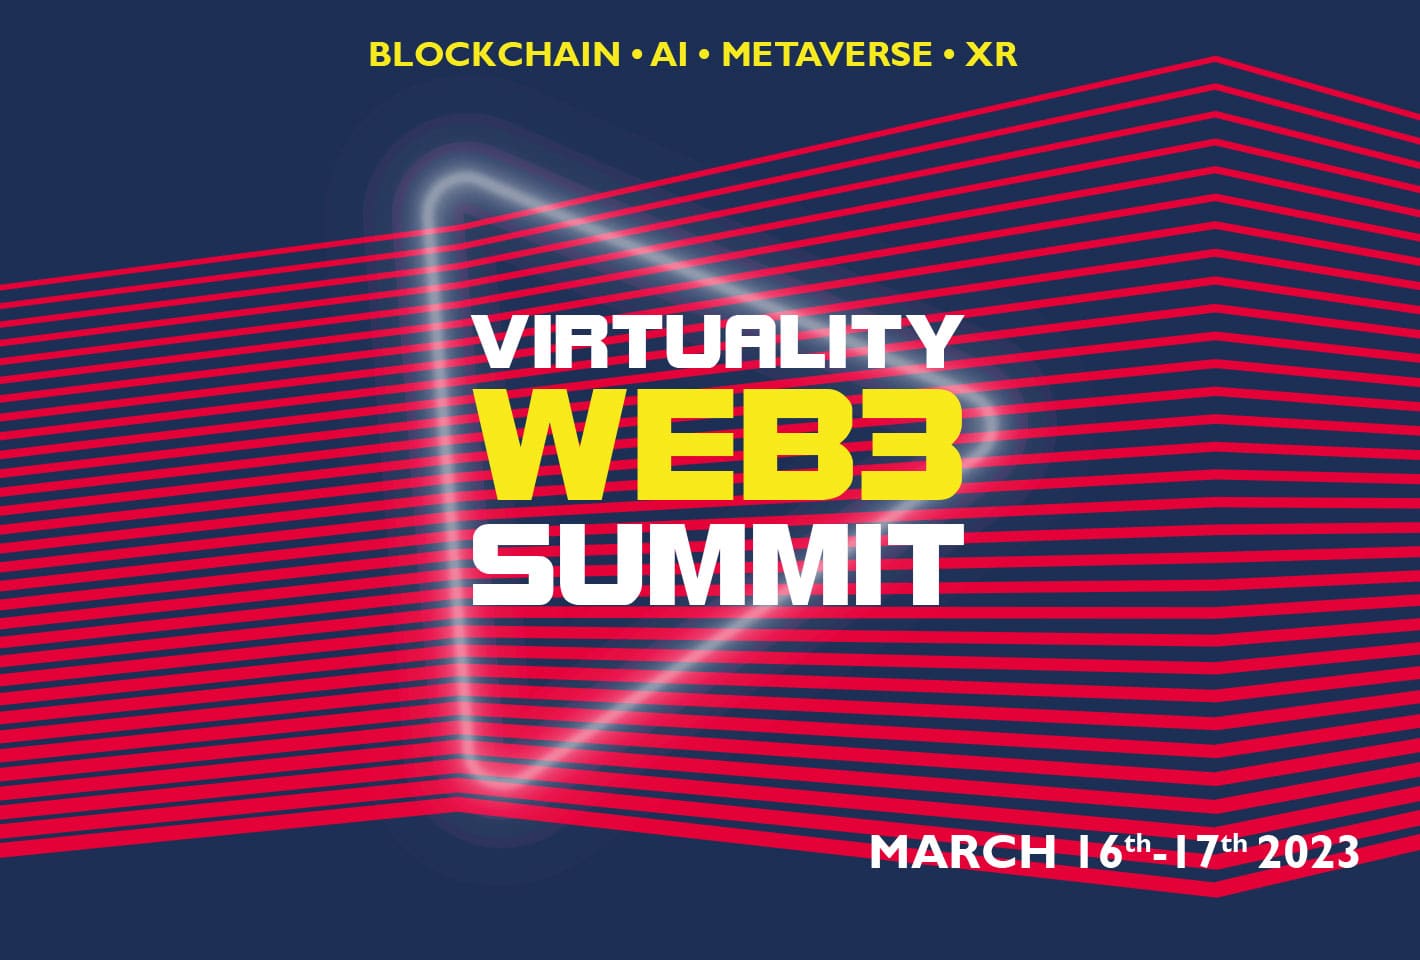 Virtuaity-Web3-Summit-Paris